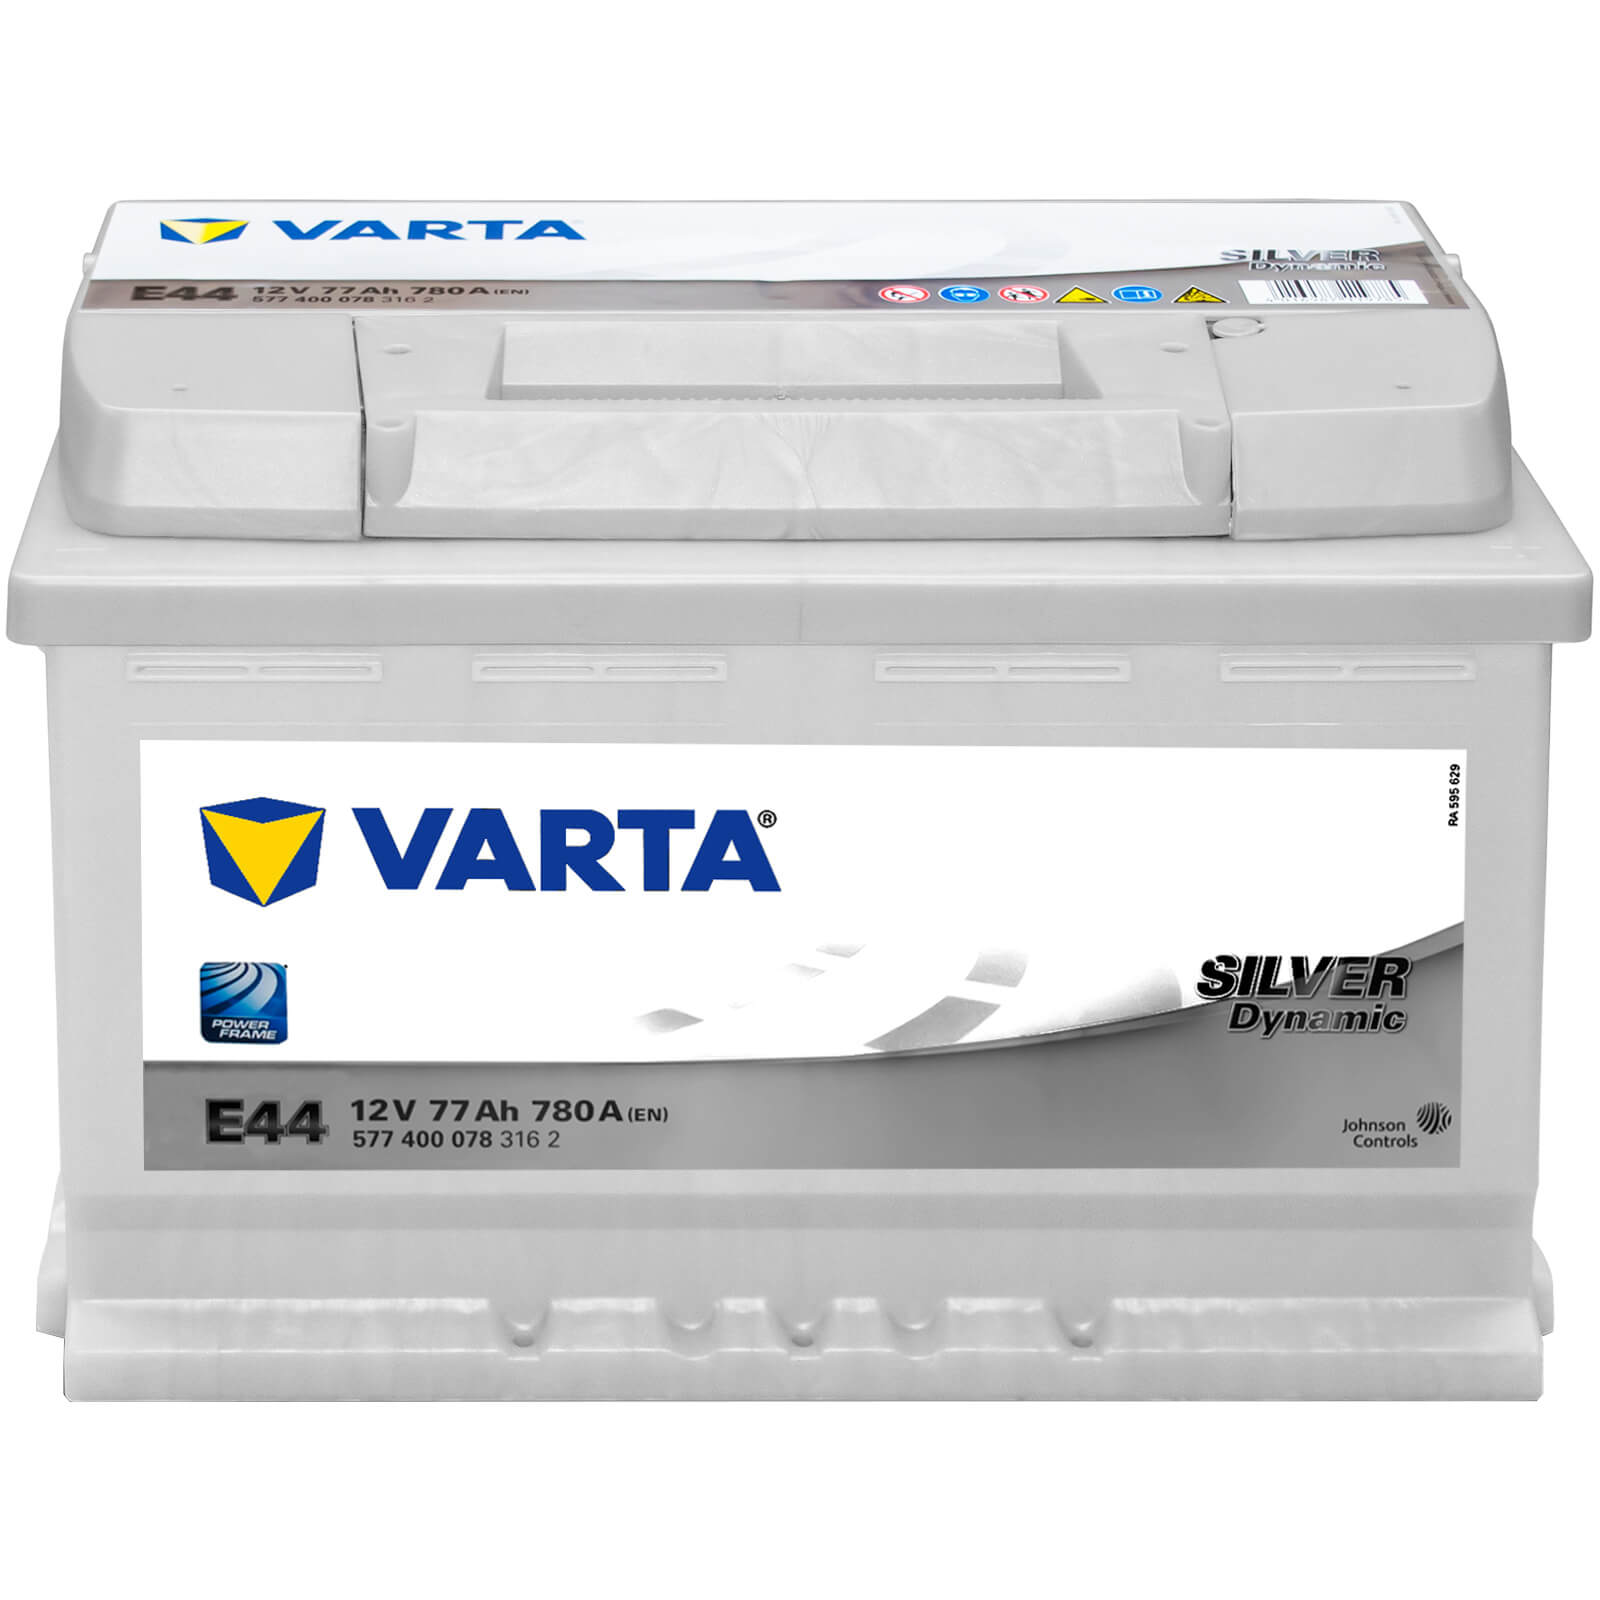 Varta E44 Silver Dynamic 12V 77Ah Batterie 577400078